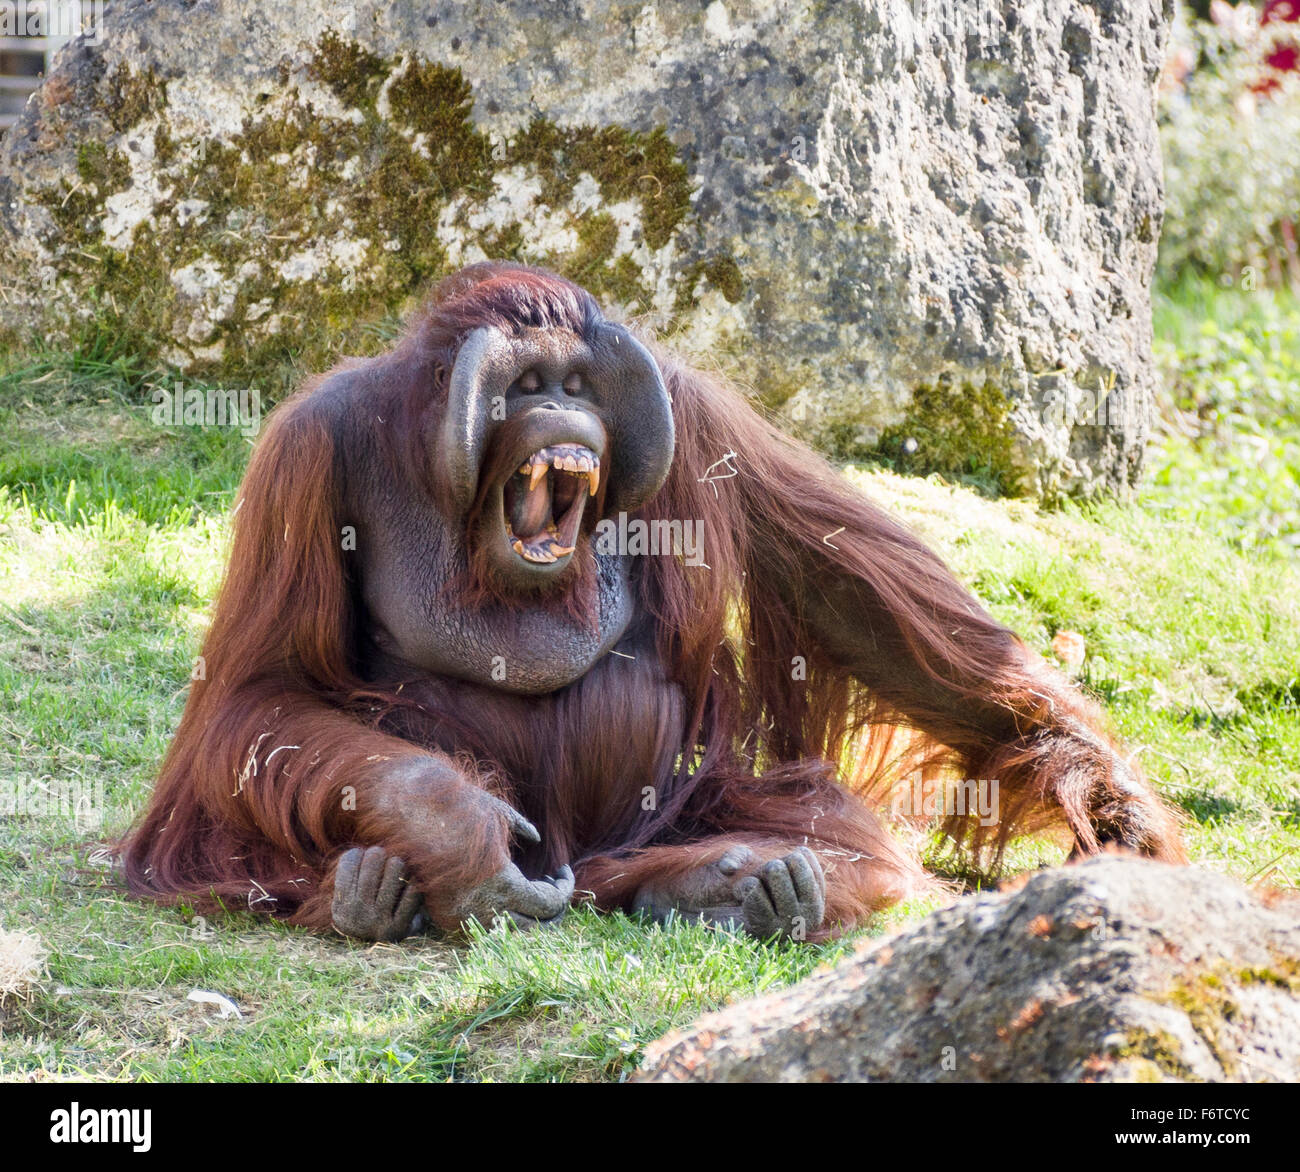 Orang-outan montrant ses incisives . Un grand mâle orang-outan appelle et affiche un énorme ensemble de dents orange Banque D'Images